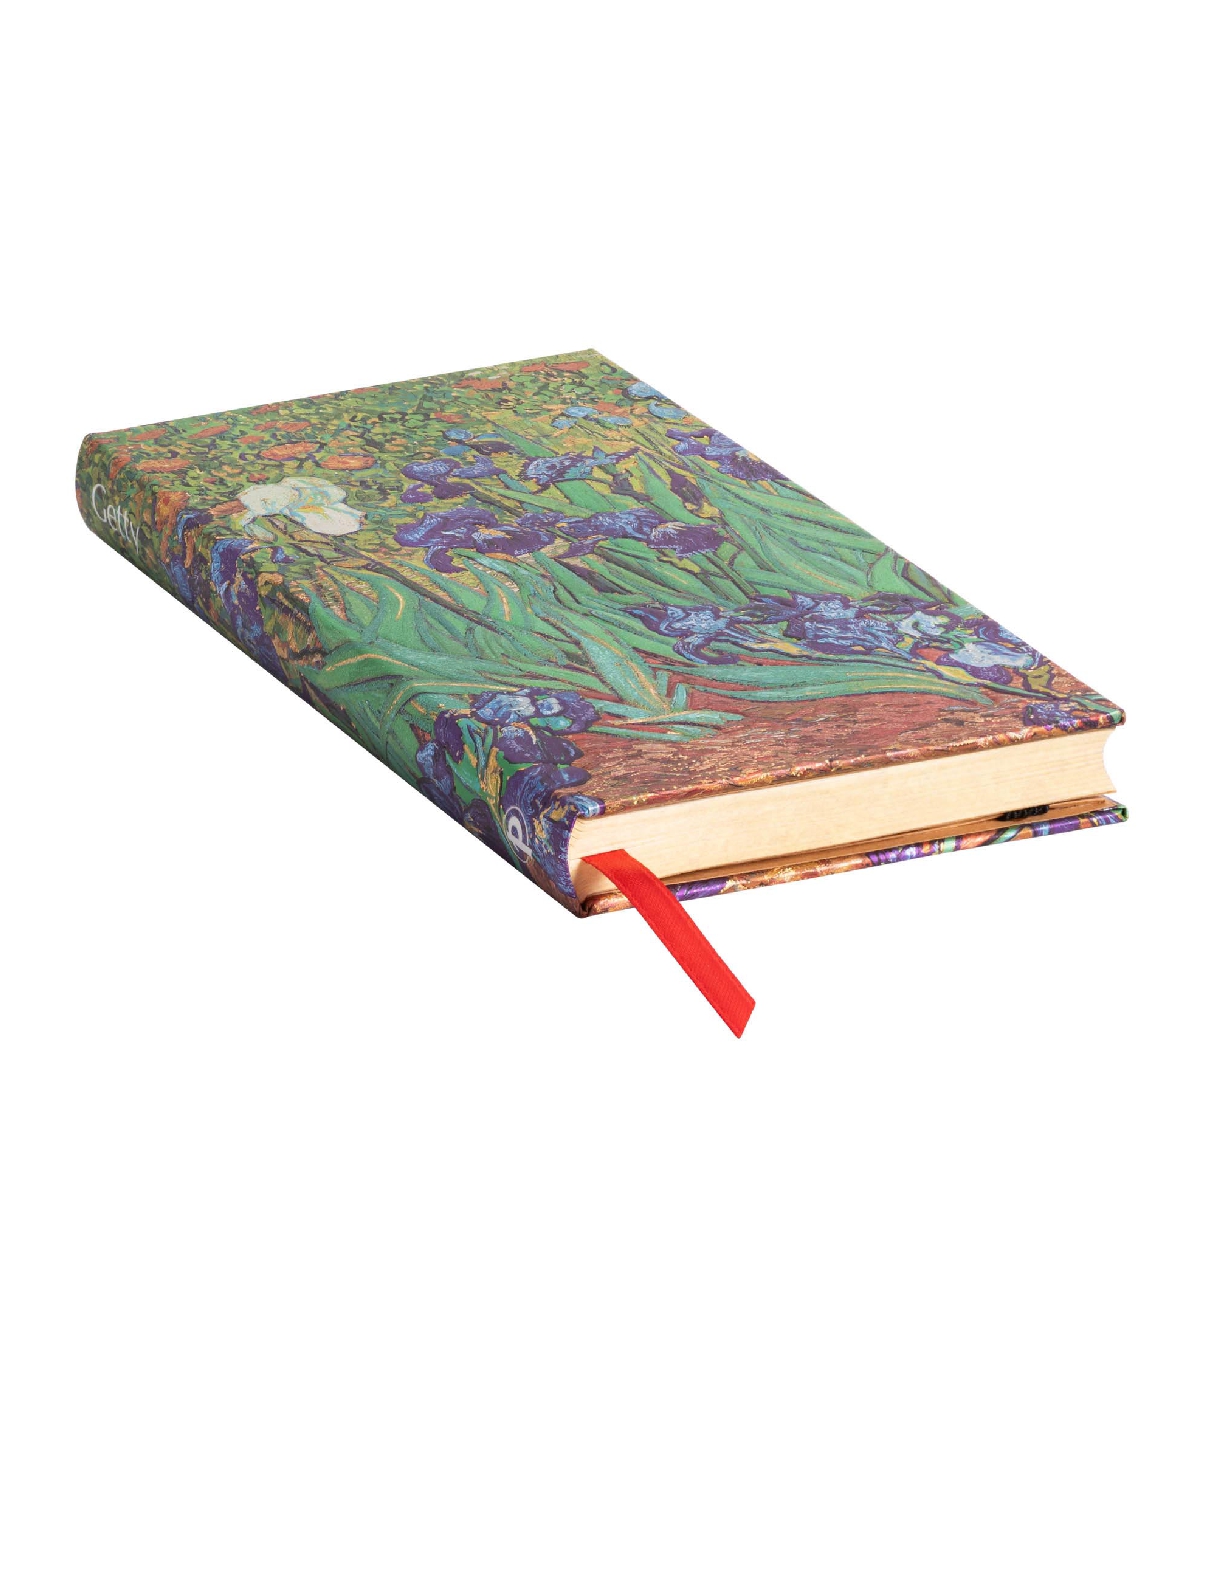 Van Gogh's Irises, Hardcover, Slim, Lined, Elastic Band Closure, 176 Pg, 85 GSM